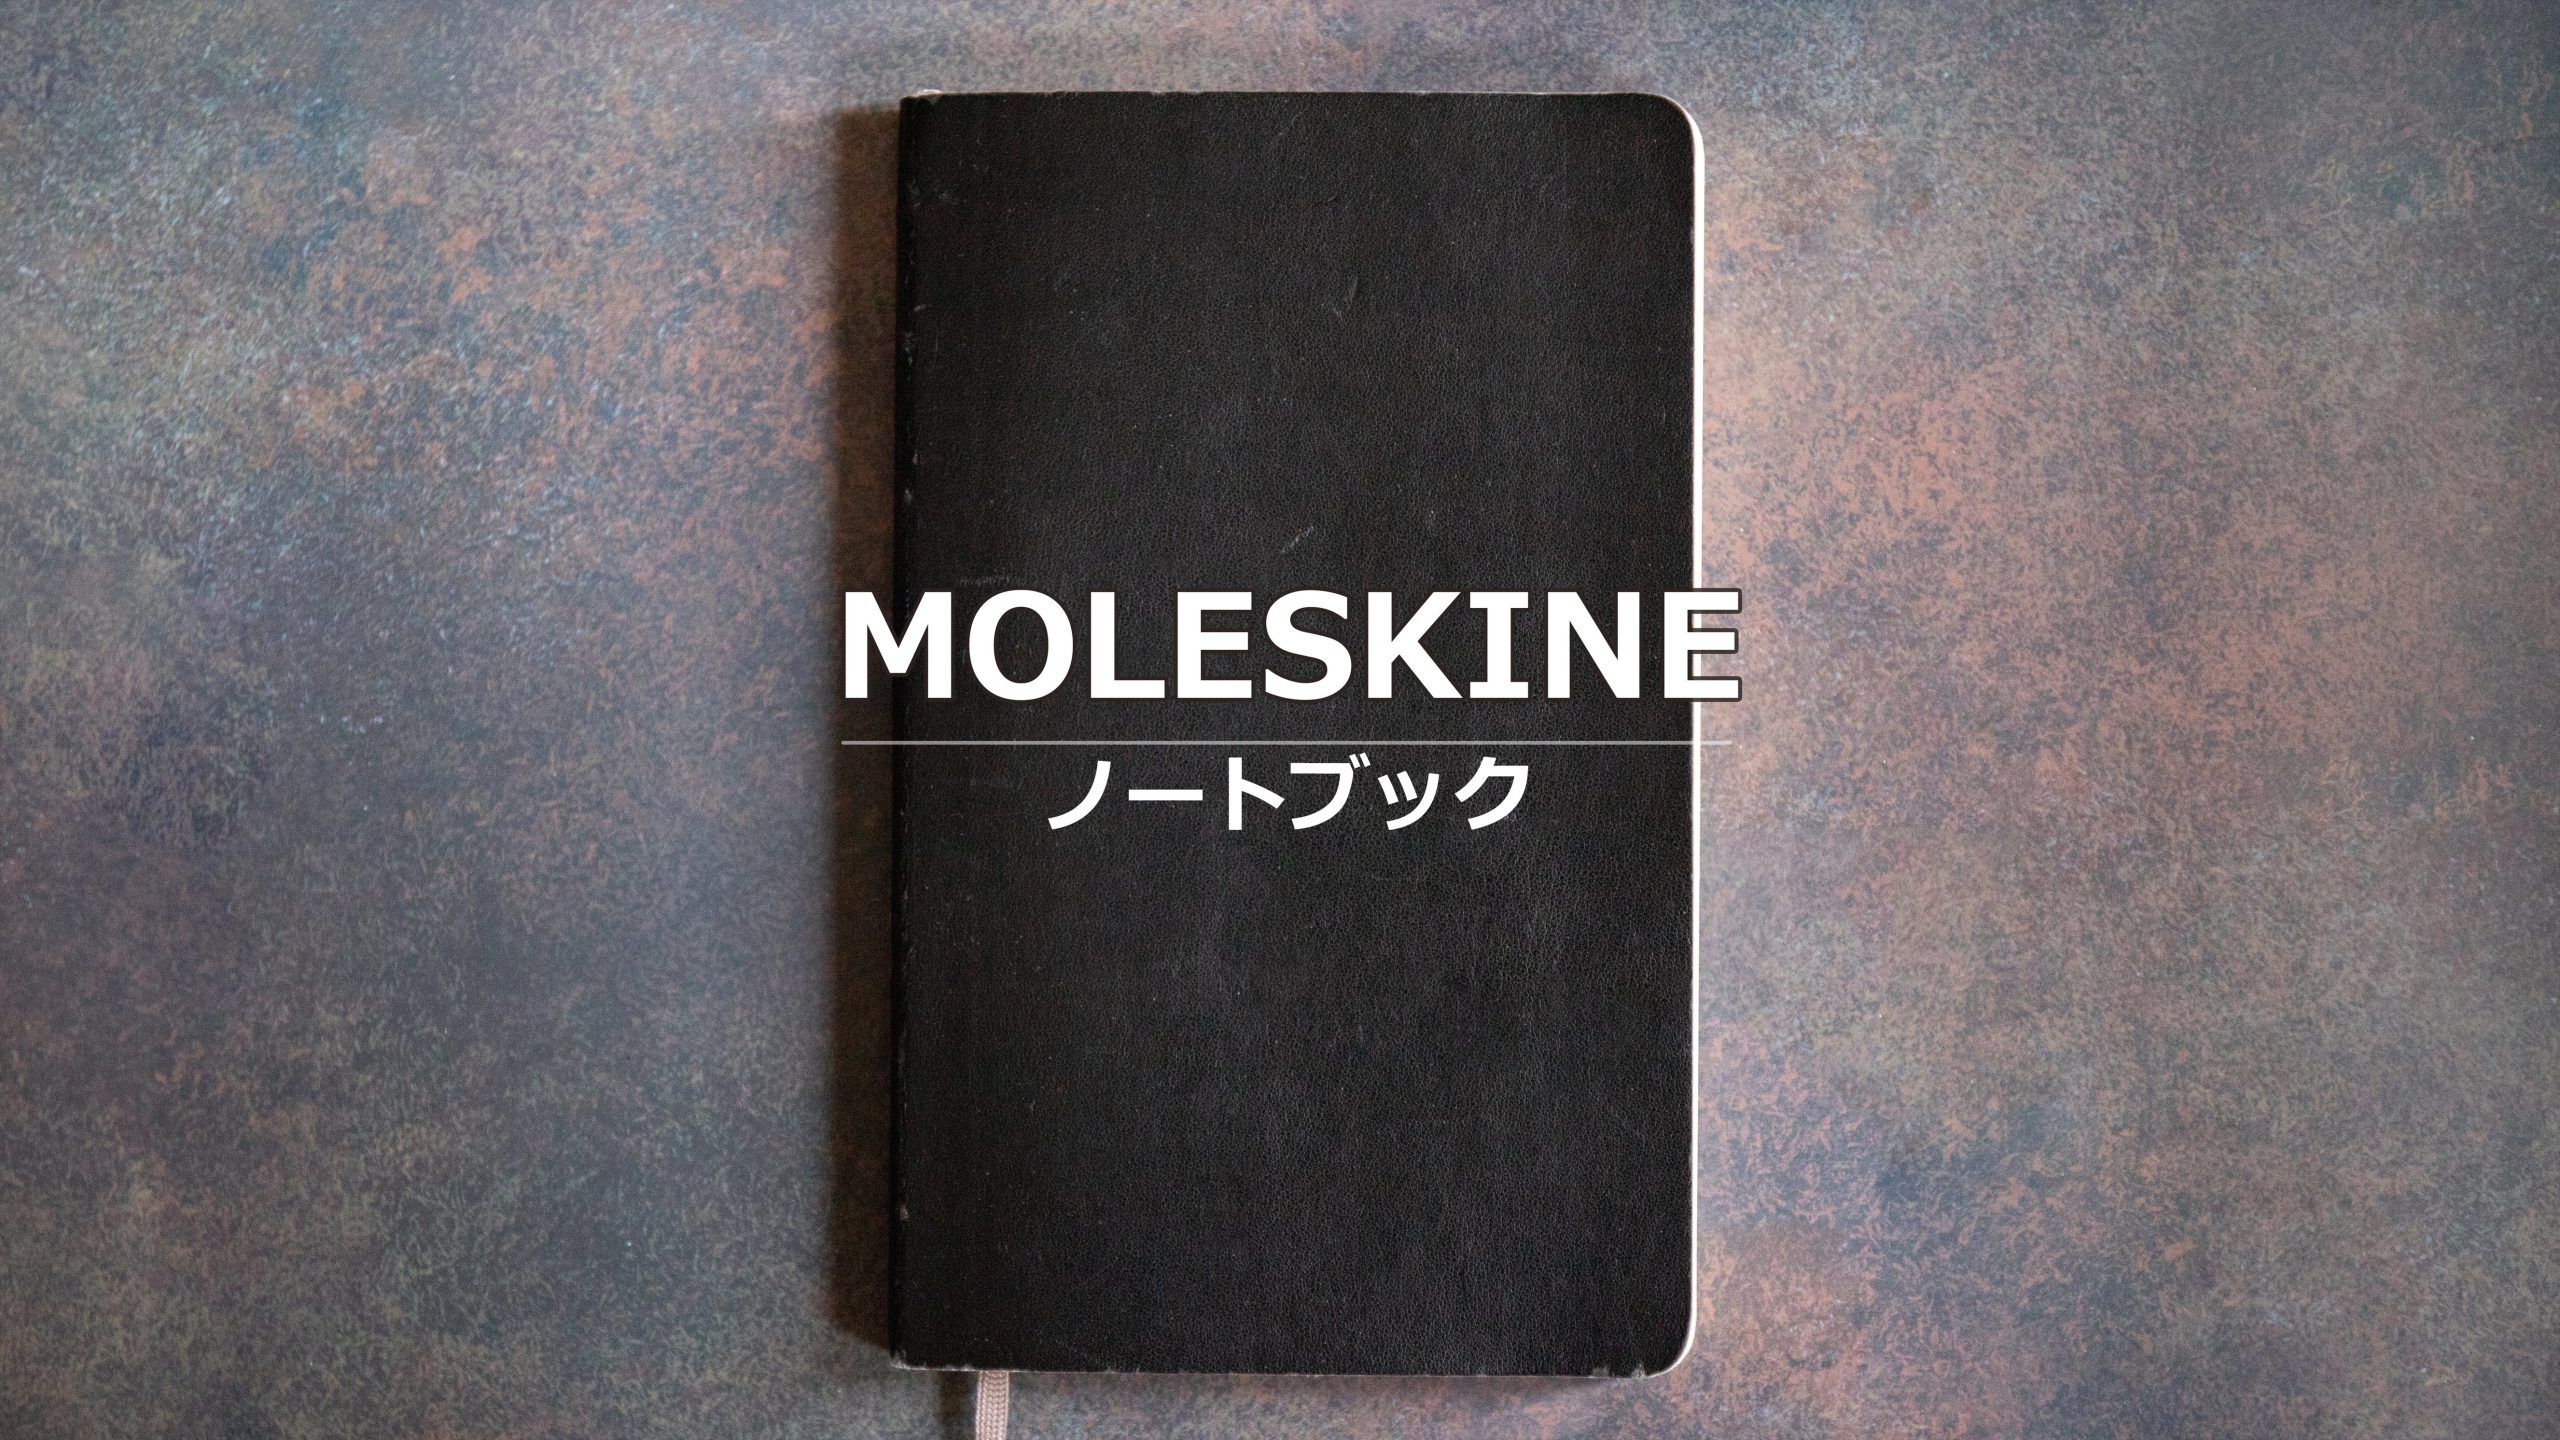 【30代で始める】MOLESKINE クラシック ノートブック- ブログ運営のお供に